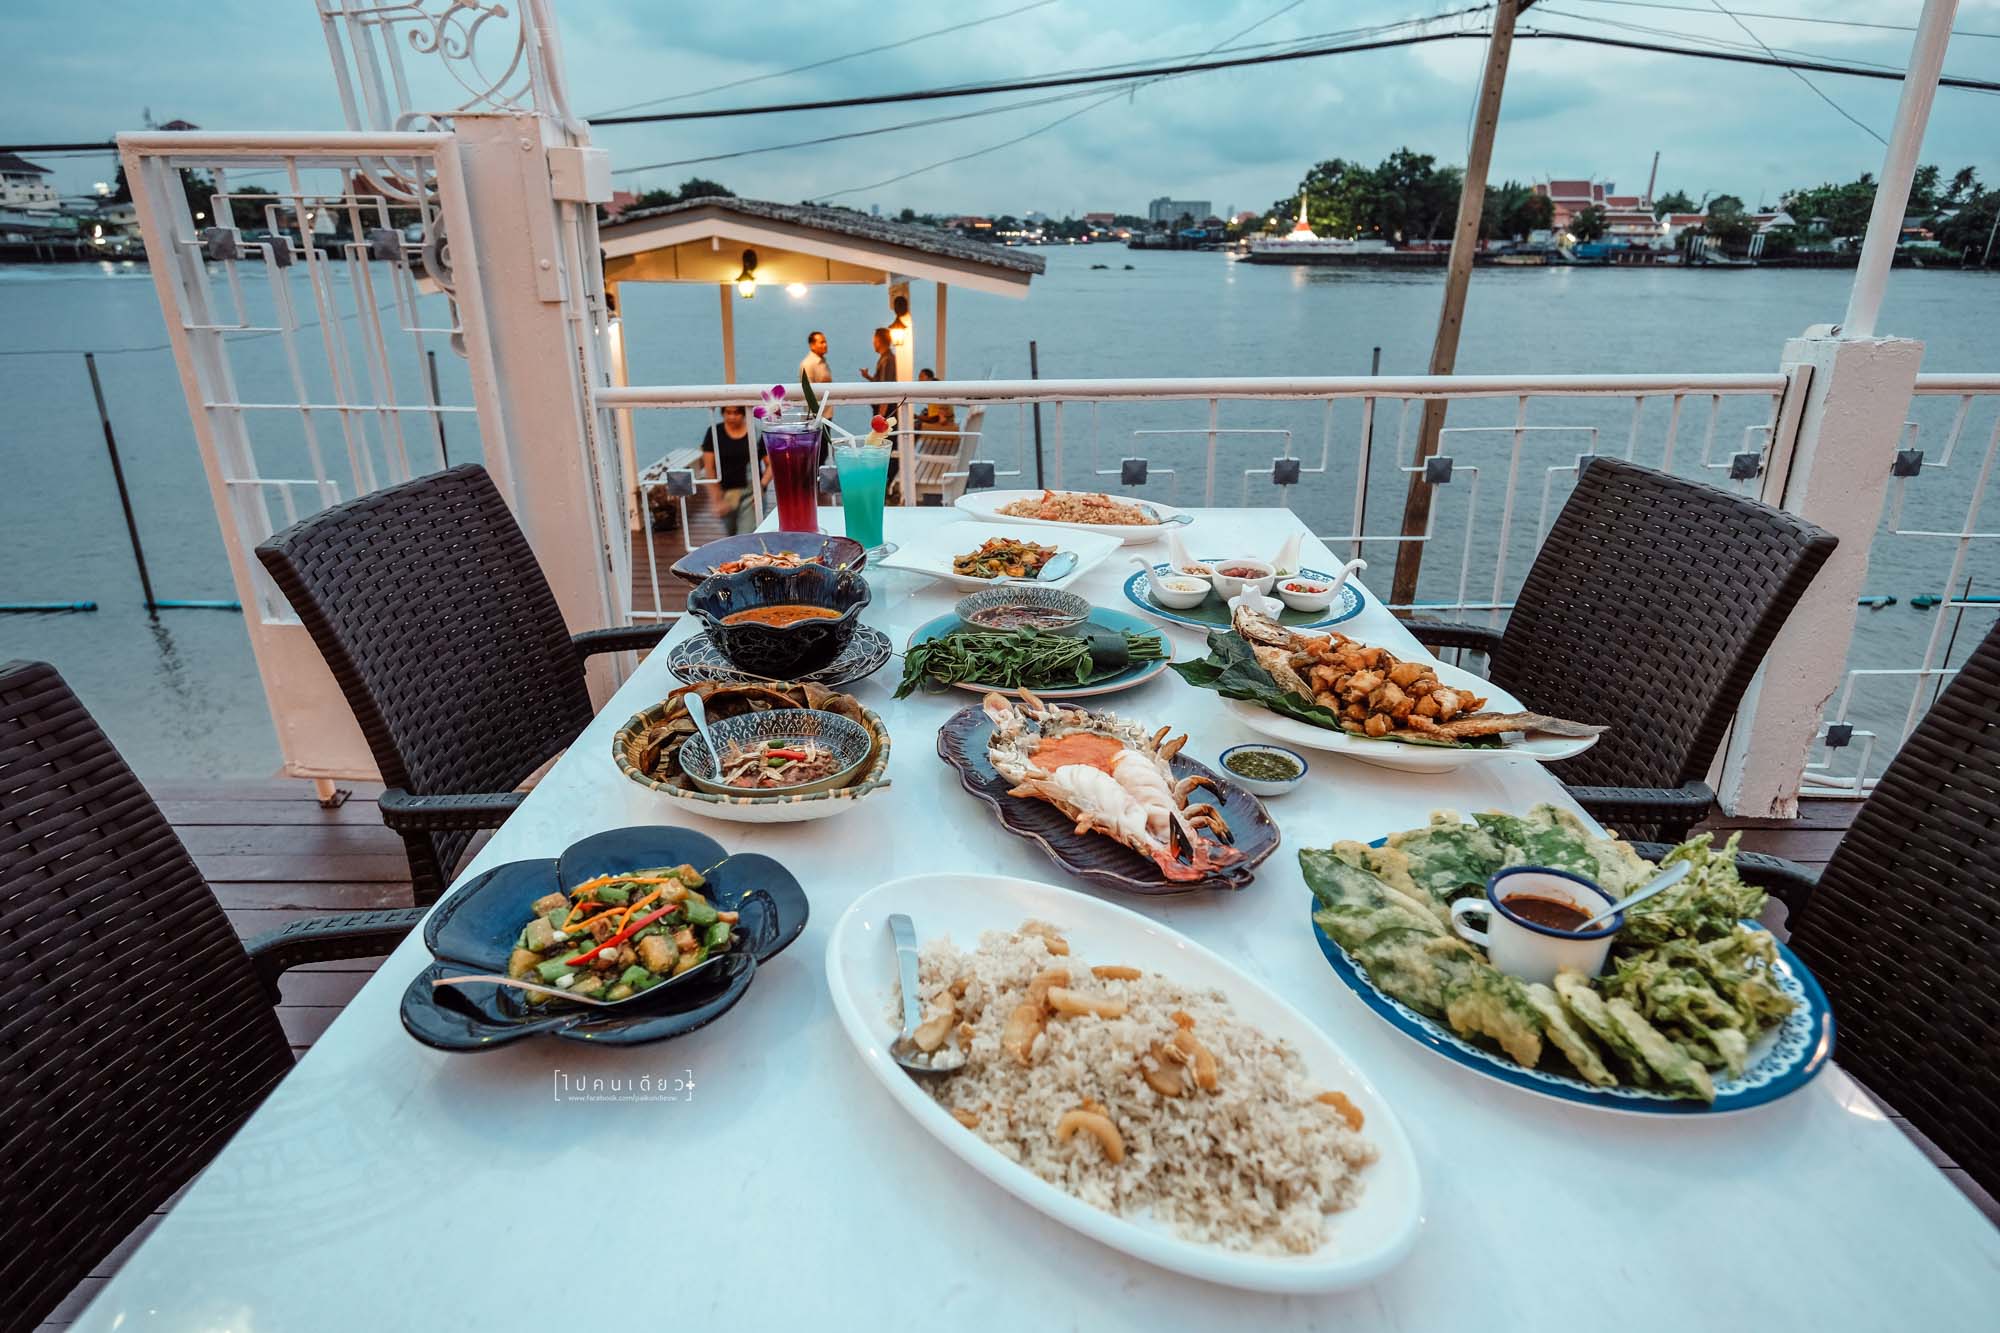 กุ้งเผา, ริมน้ำ, ริมแม่น้ำ, แม่น้ำเจ้าพระยา, ชมวิว, ร้านอาหาร, อาหารไทย, ร้านน่านั่ง, ปากเกร็ด, เกาะเกร็ด, นนทบุรี, chang wang imm, thailand, thaifood, river, thairestaurant, prawn, THE WHITE PAGODA, Nonthaburi